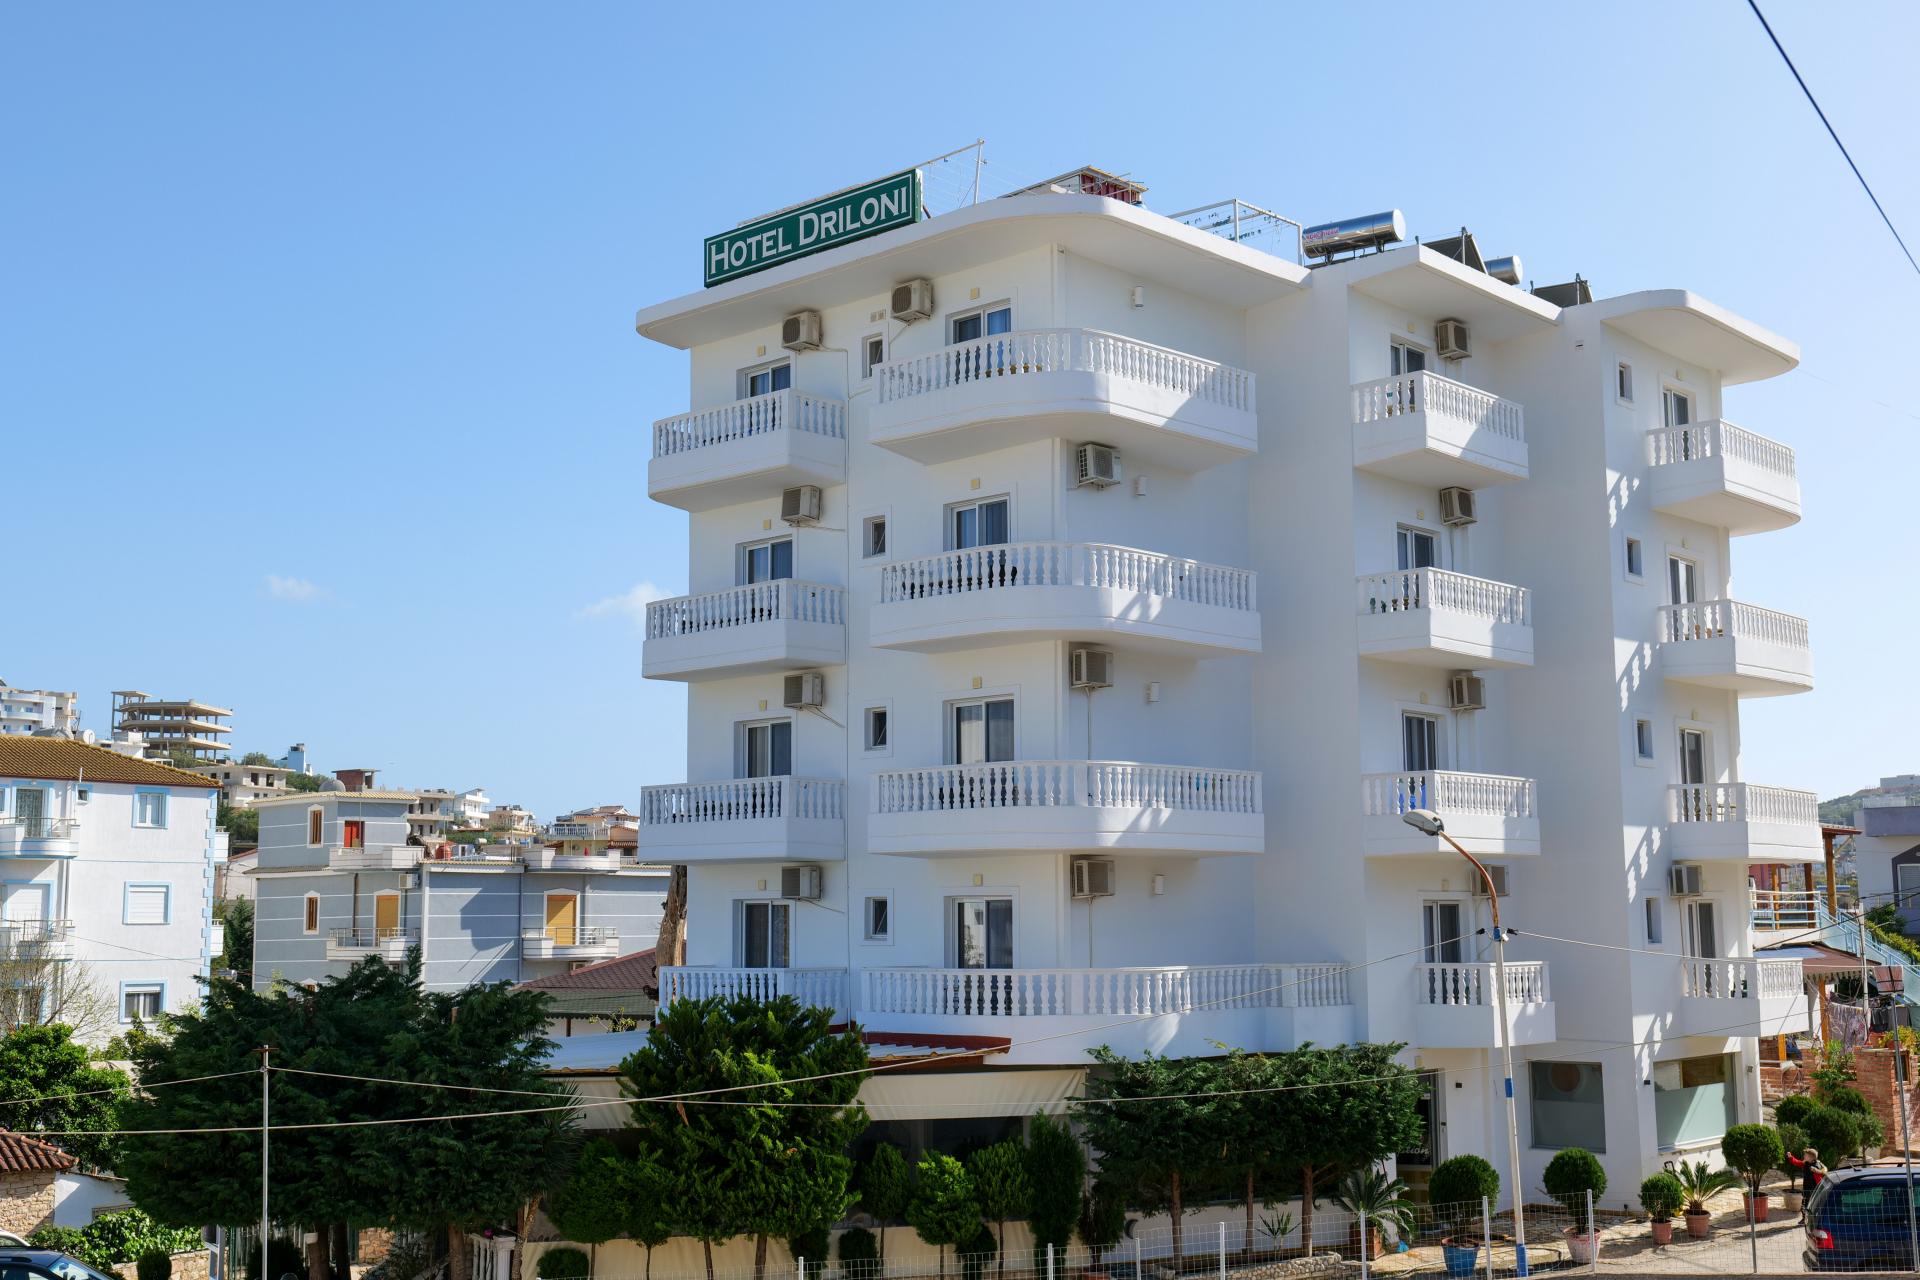 Hotel Drilon - Albania